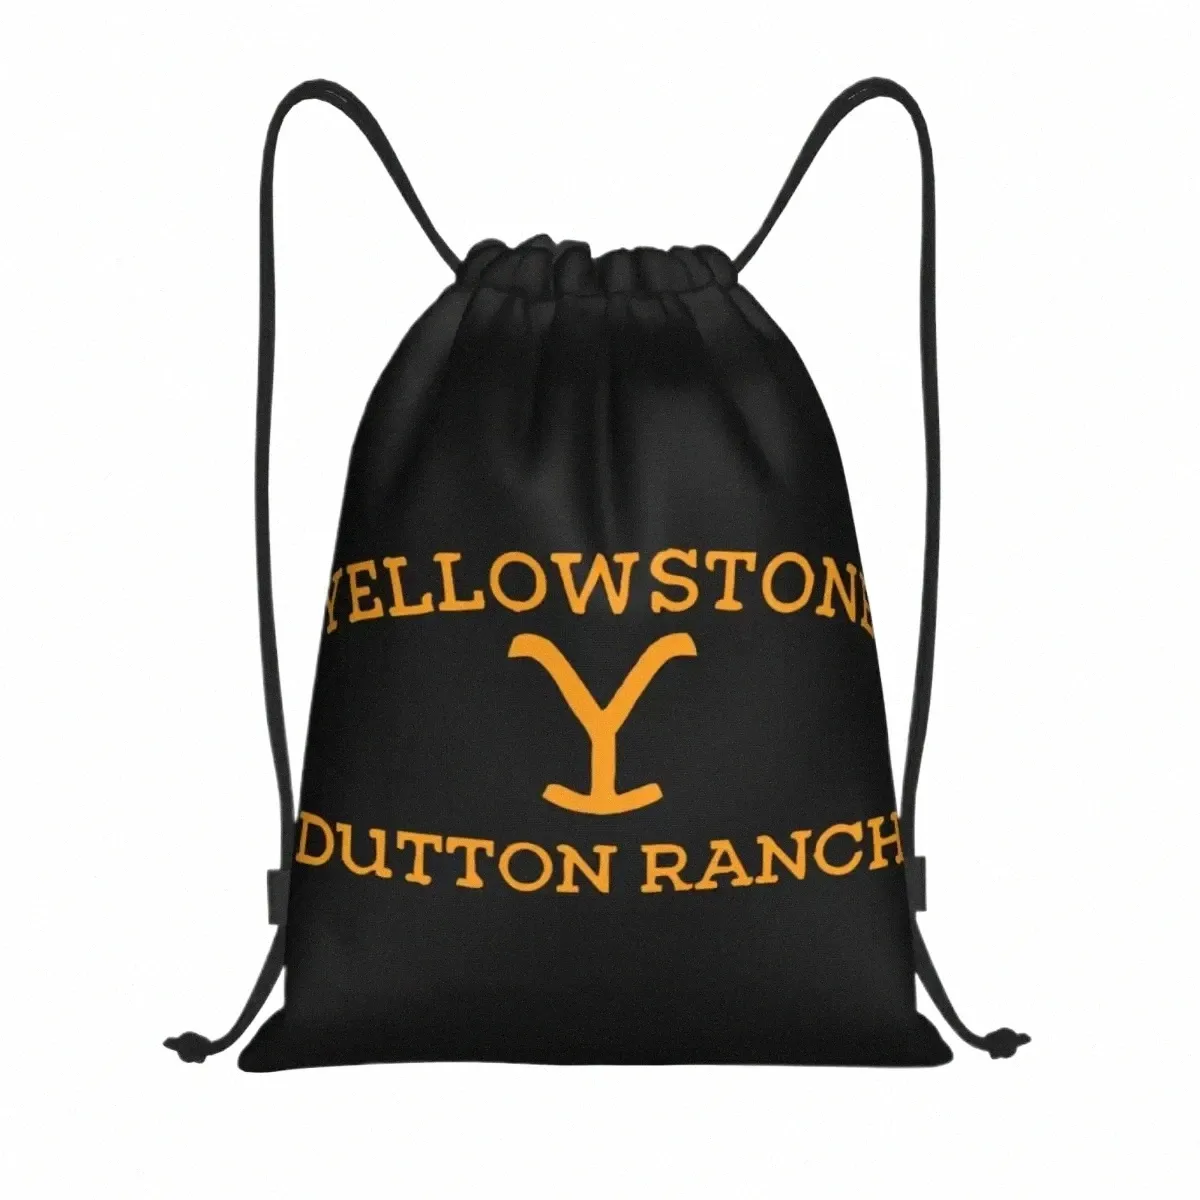 Sacs à cordon de ranch Yellowste Dutt personnalisés pour les sacs à dos de yoga shopp